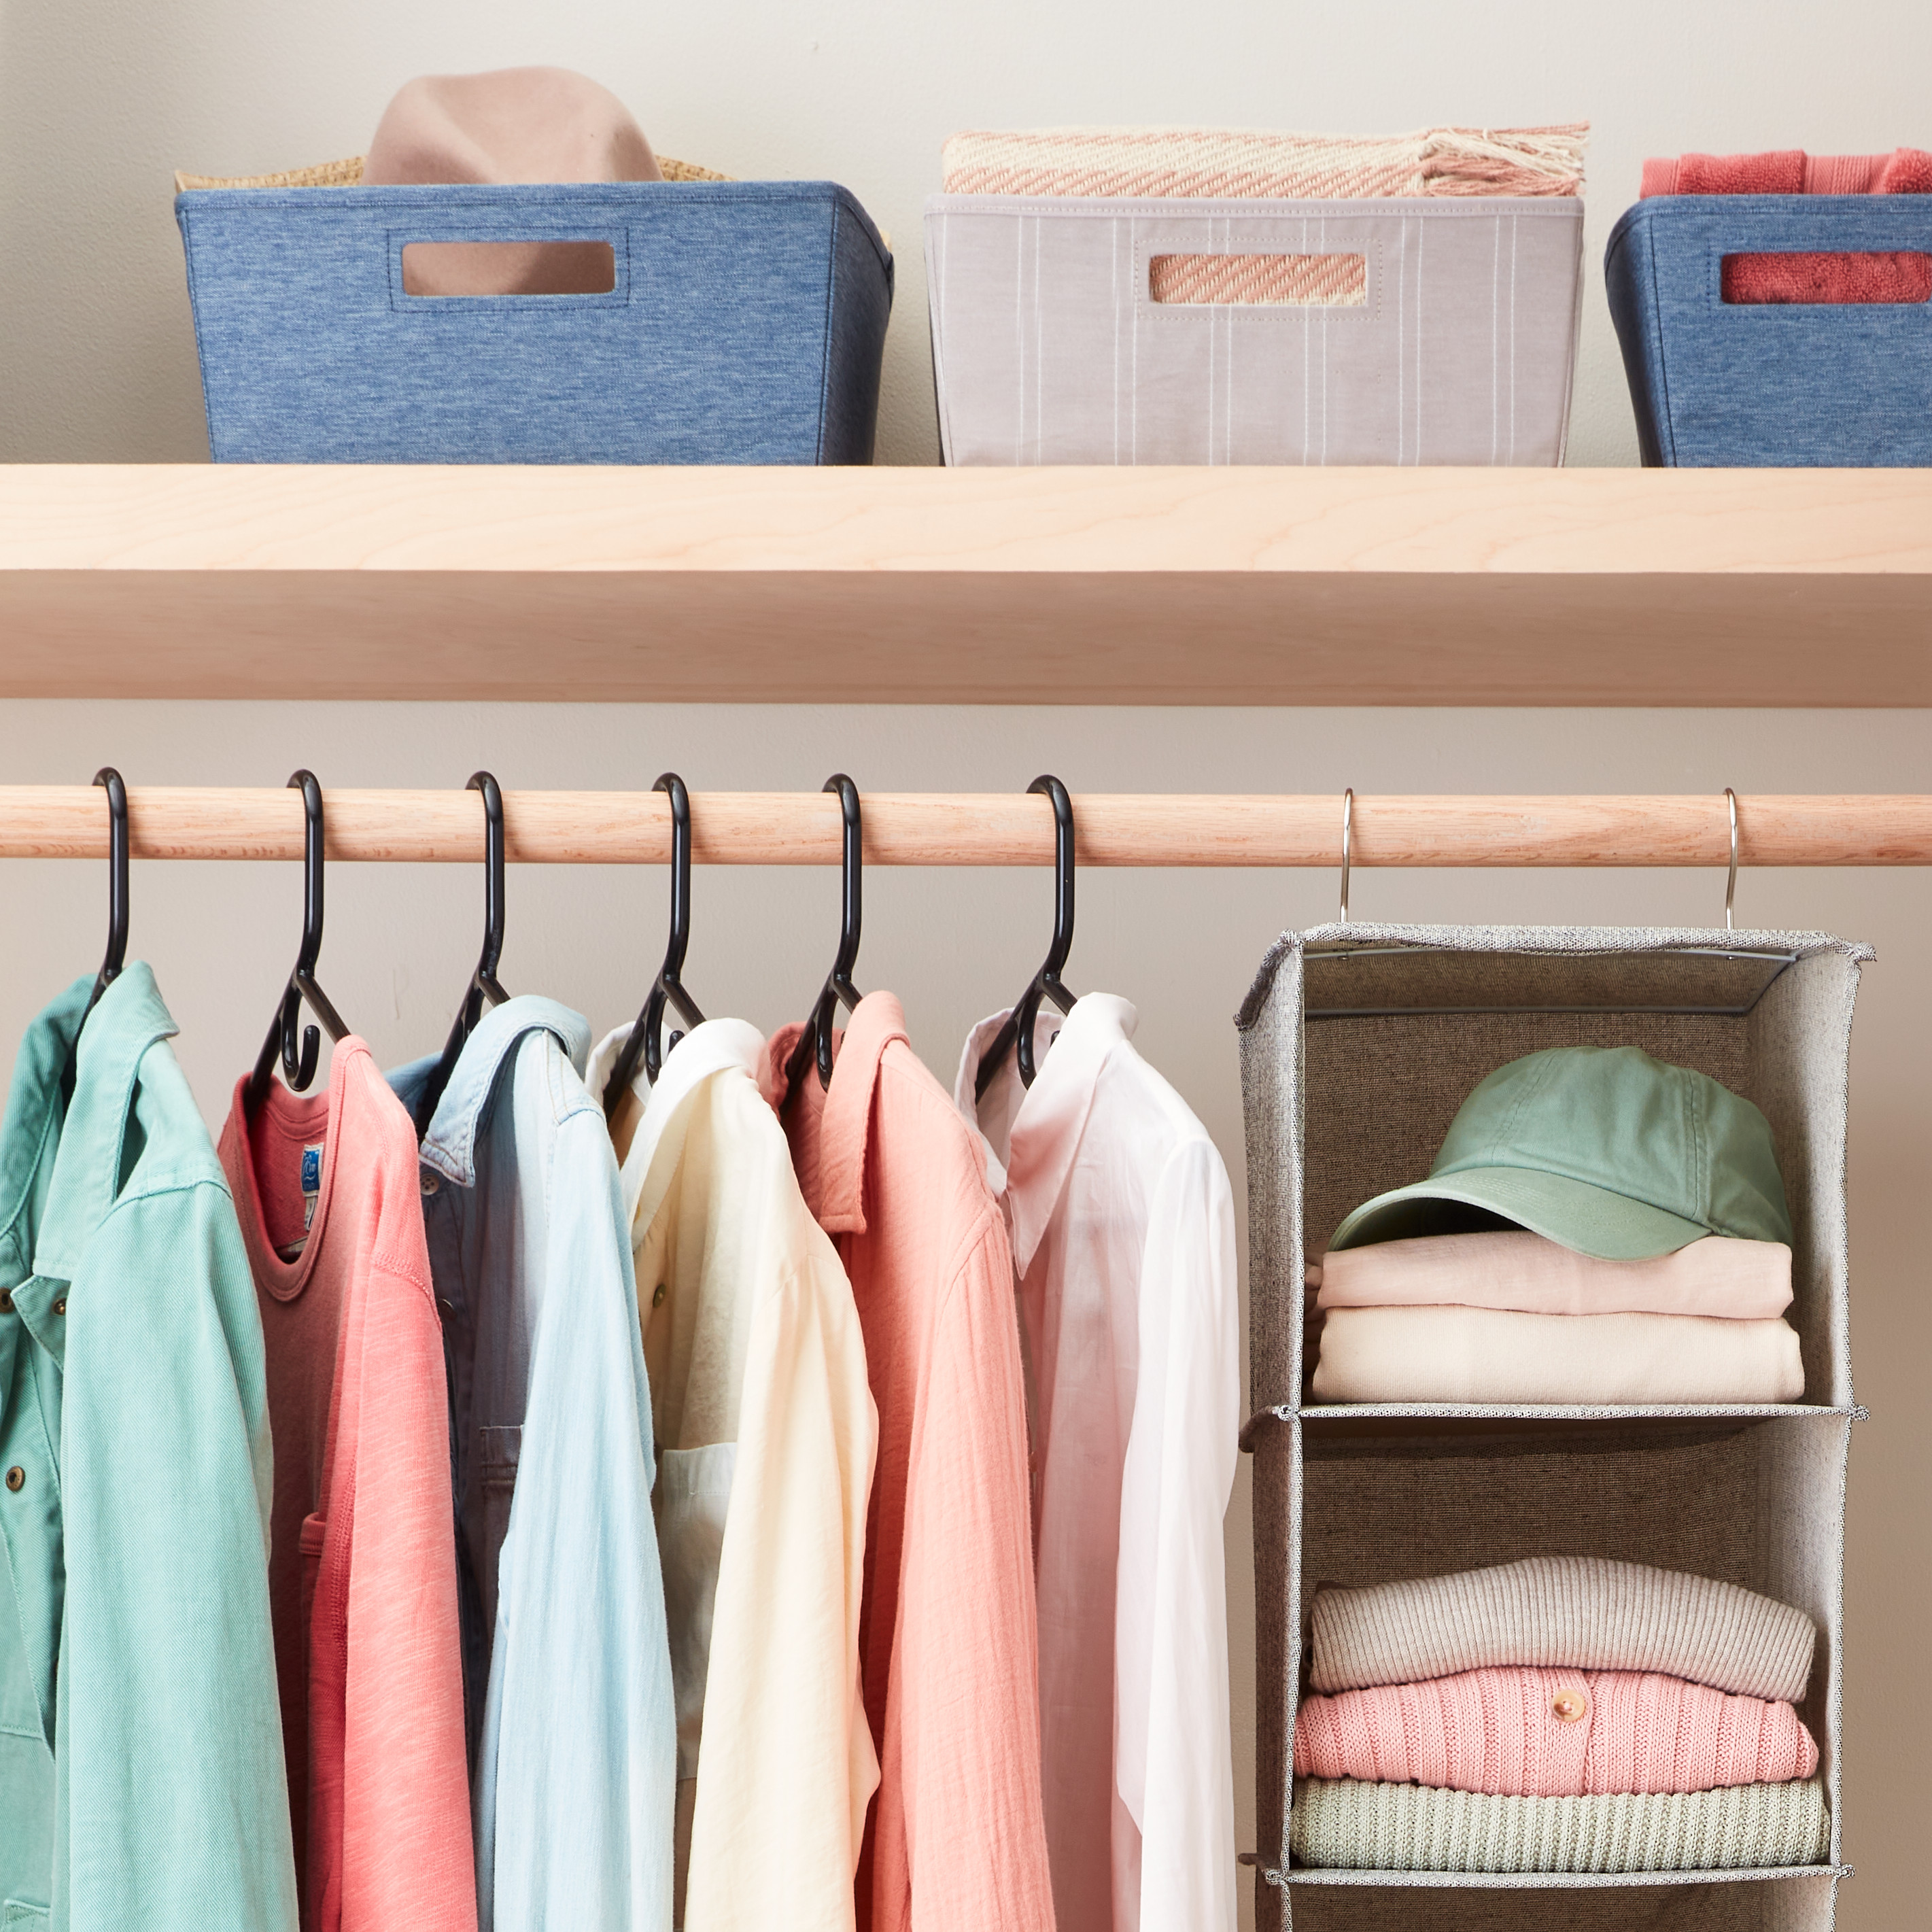 Folding Wardrobe Organizer Clothing Hanging Storage 6-Shelve Space Save Pink 